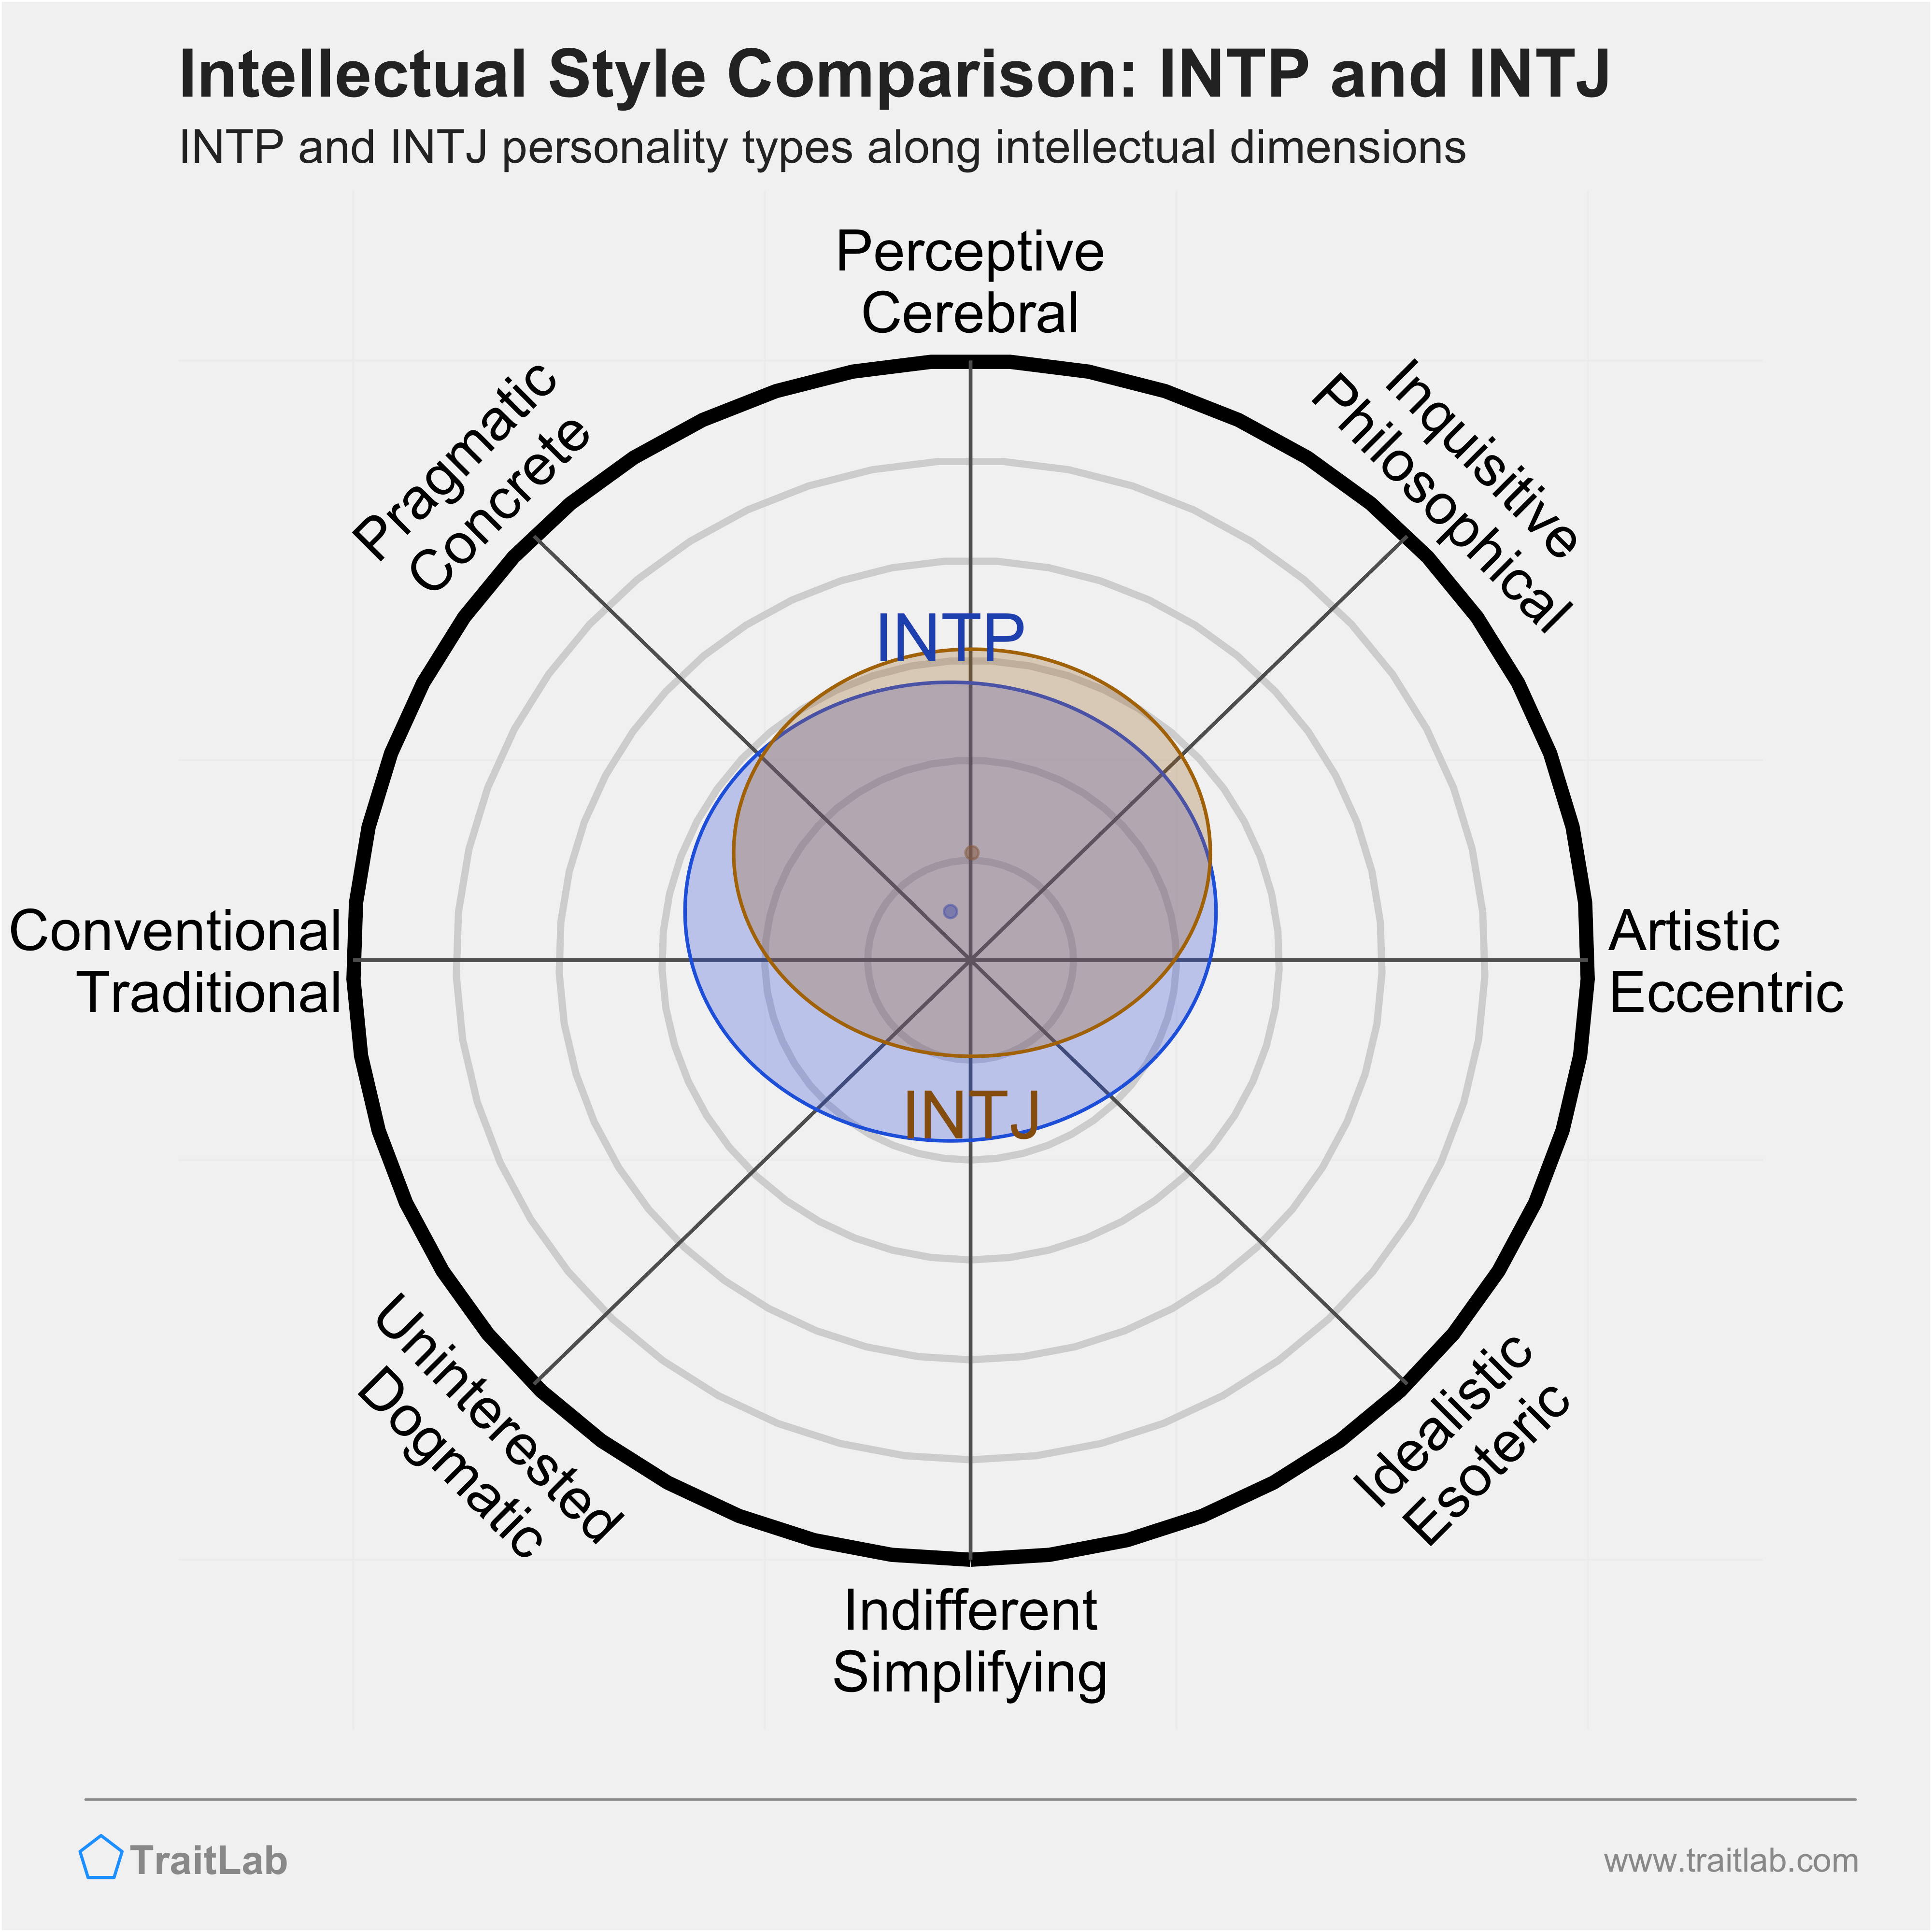 INTP and INTJ comparison across intellectual dimensions